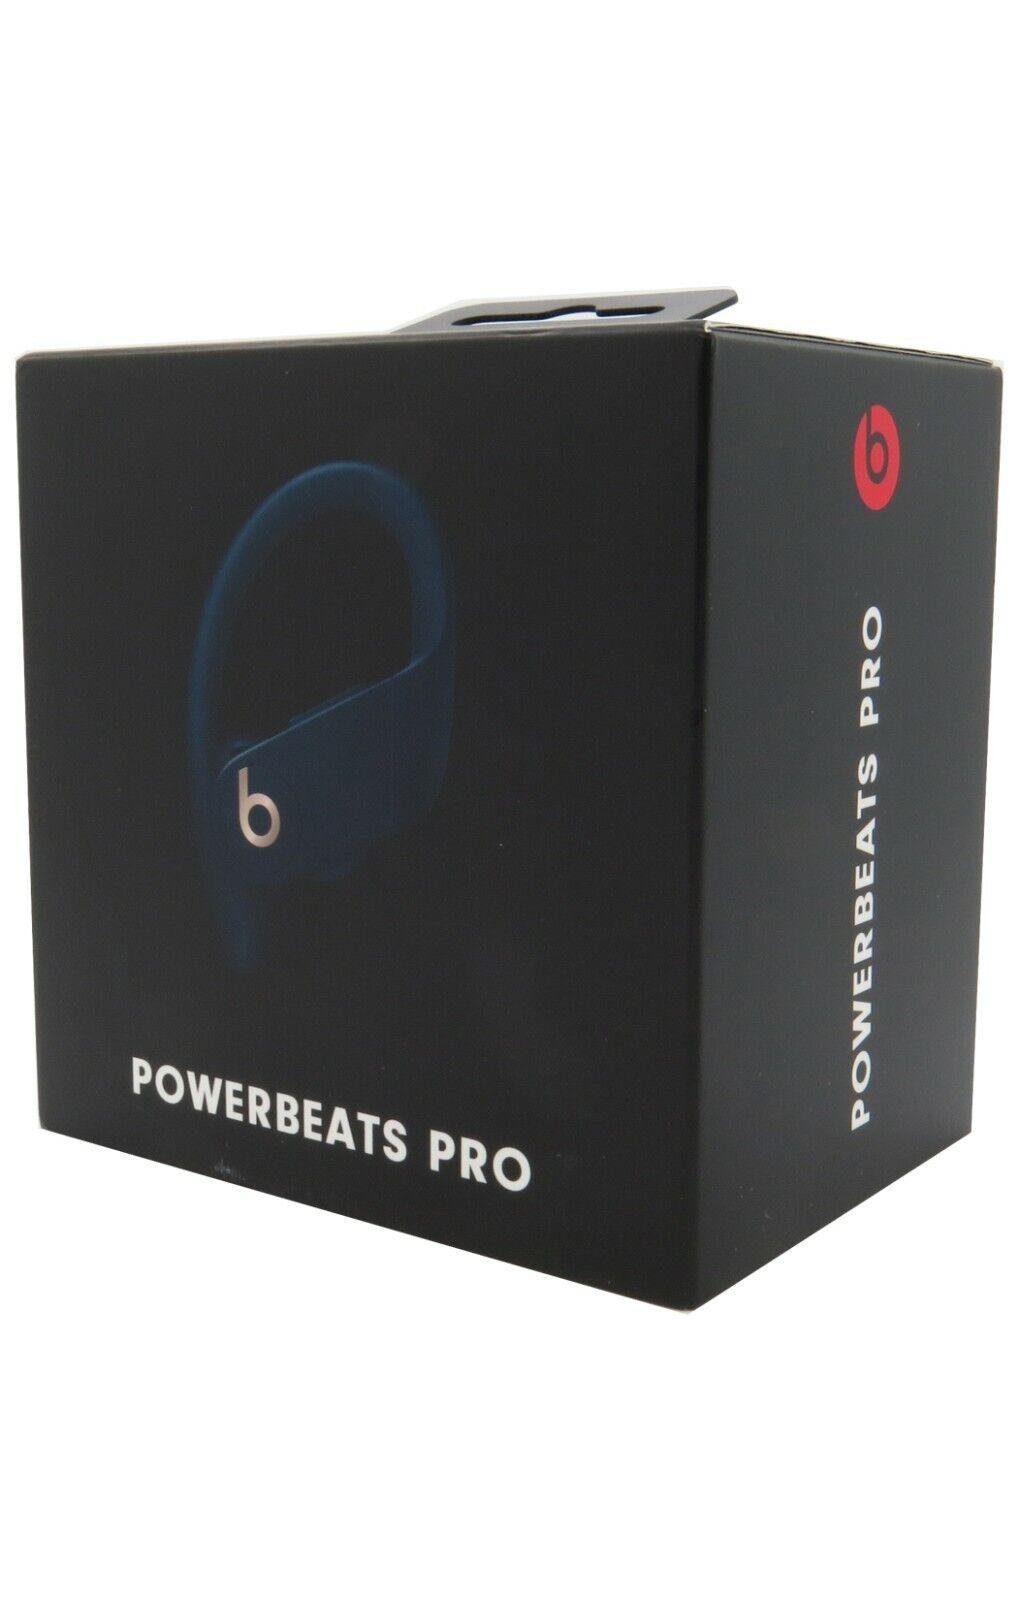 Beats by Dr. Dre Powerbeats Pro Wireless Bluetooth In Ear Headphones 2